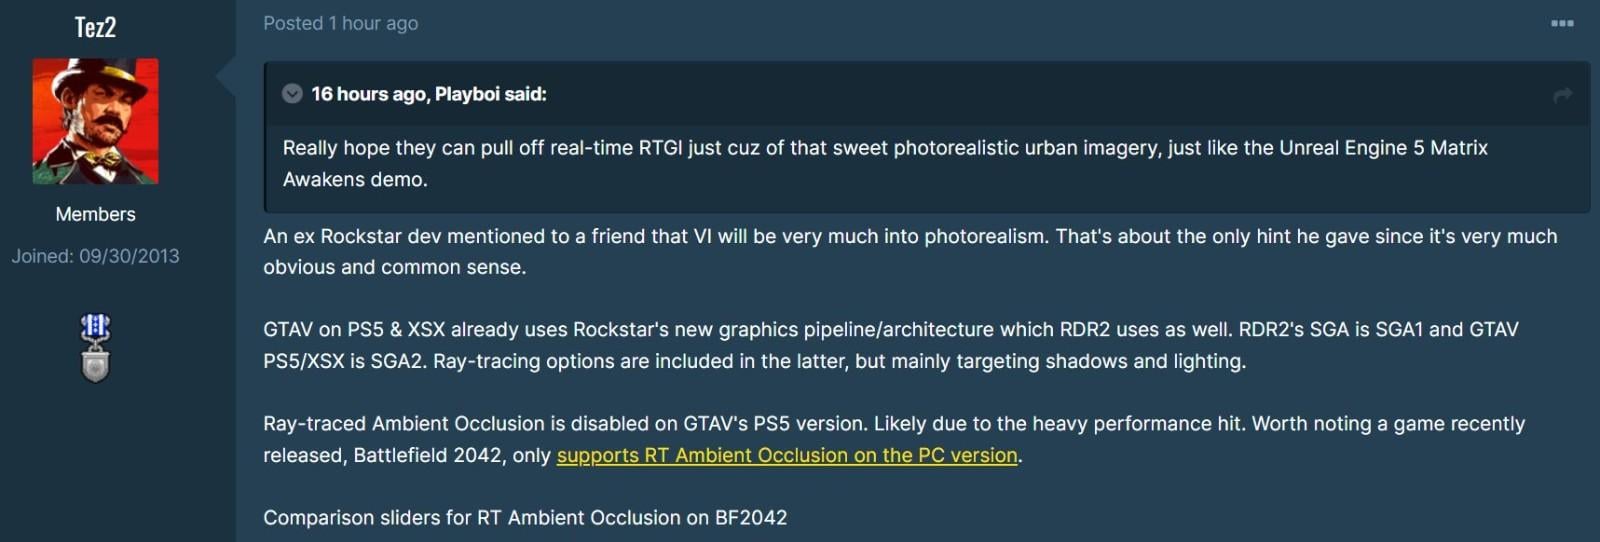 前員工稱《GTA 6》畫面非常逼真 光影效果更出眾